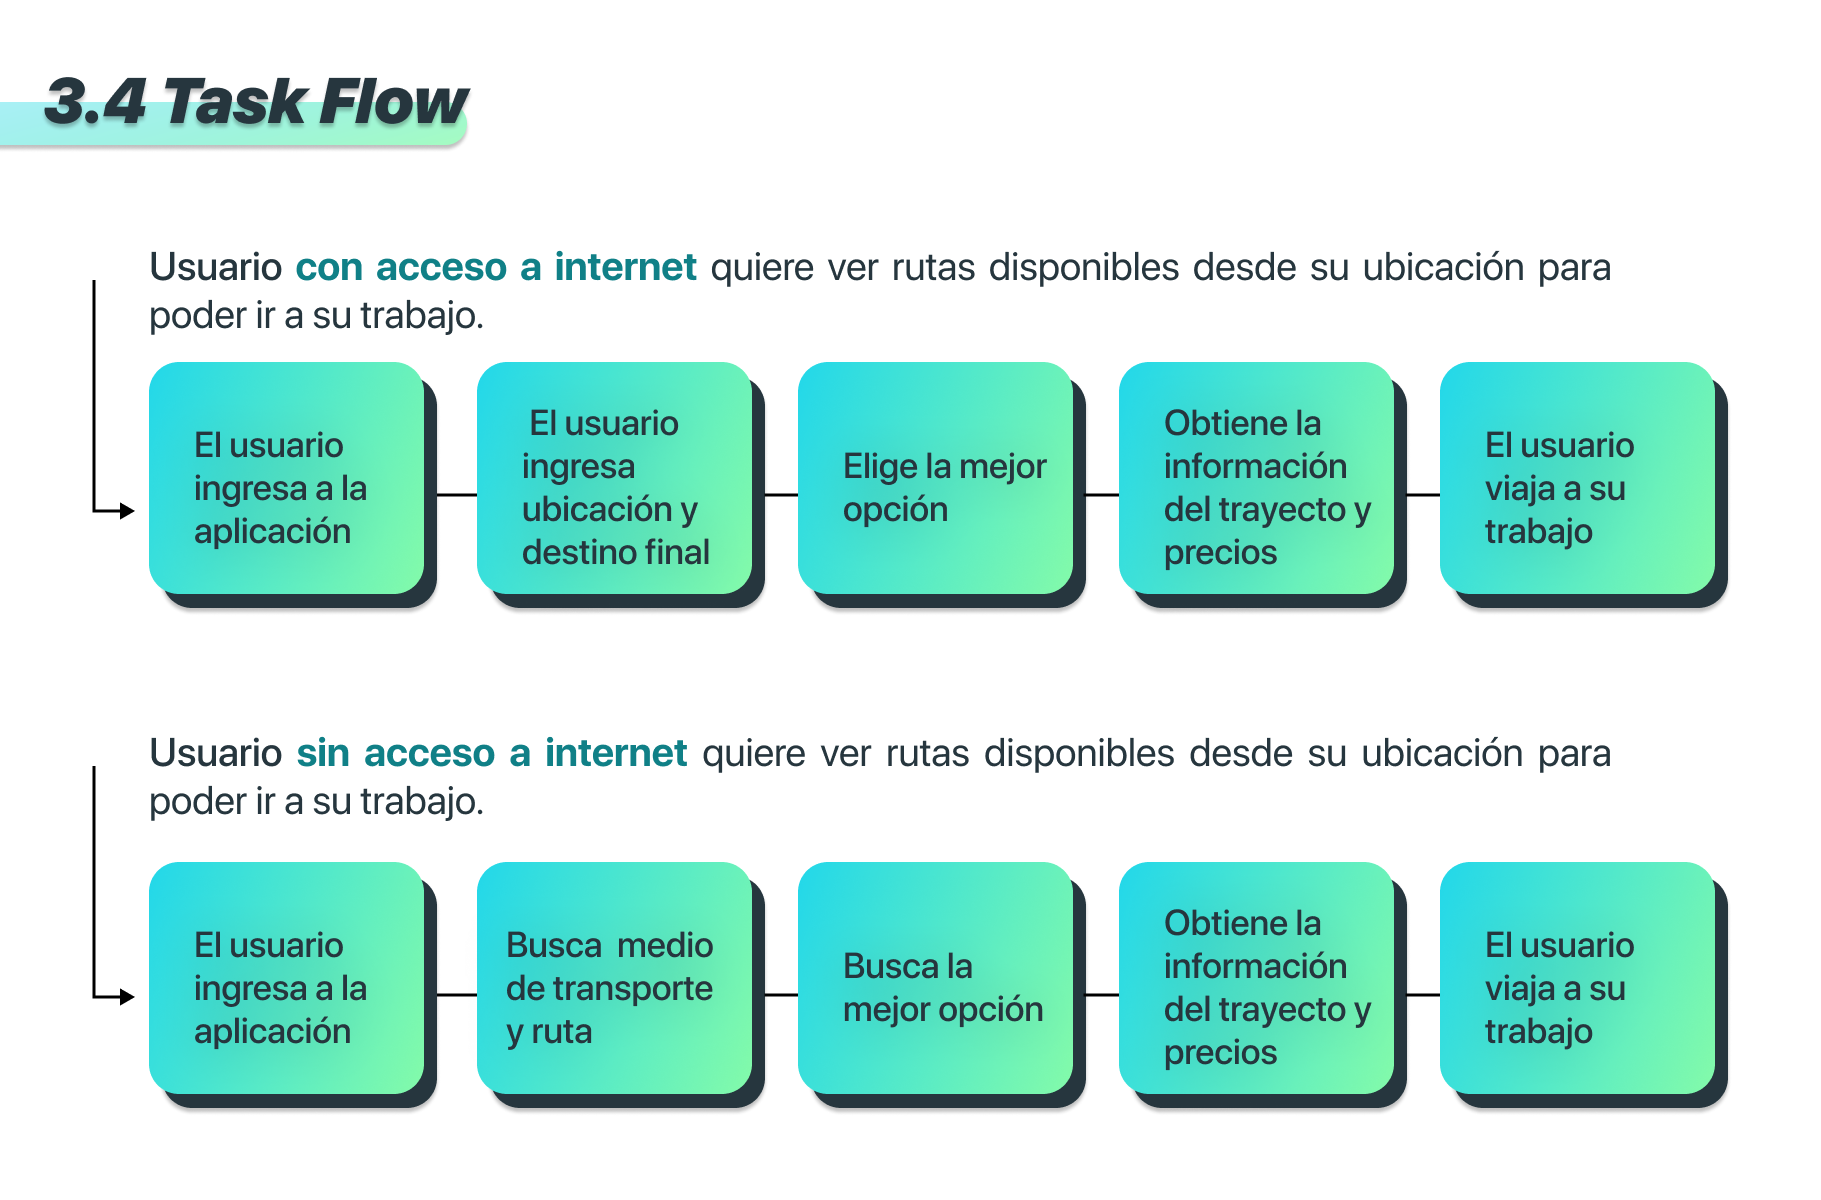 3.4 Task Flow

Usuario con acceso a internet quiere ver rutas disponibles desde su ubicacion para
poder ir a su trabajo.

 

Usuario sin acceso a internet quiere ver rutas disponibles desde su ubicacion para
poder ir a su trabajo.